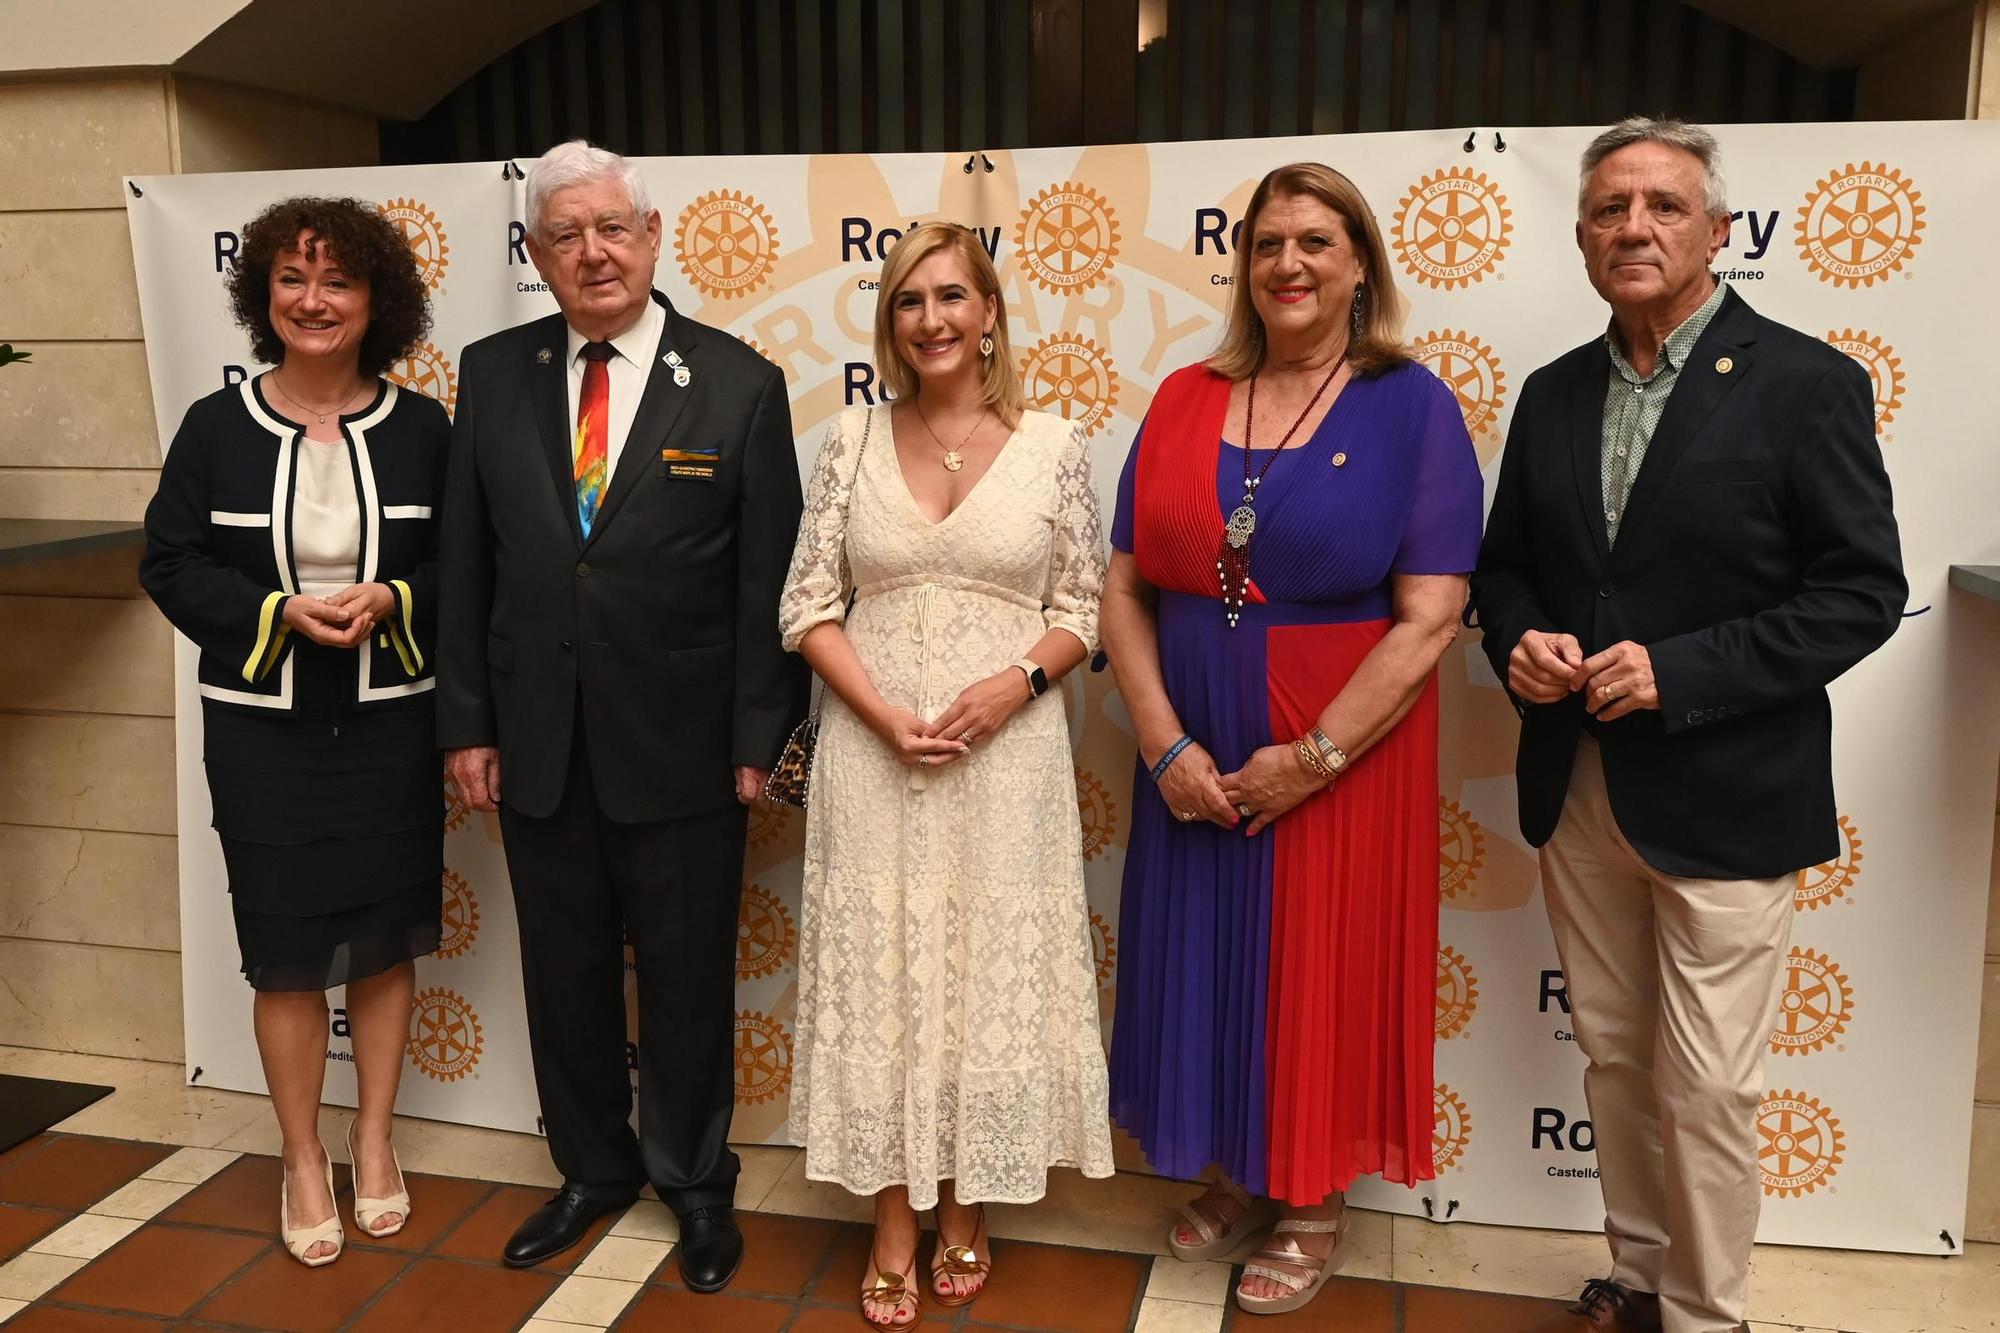 Galería de imágenes: Constitución del Club Rotary Castellón-Mediterráneo